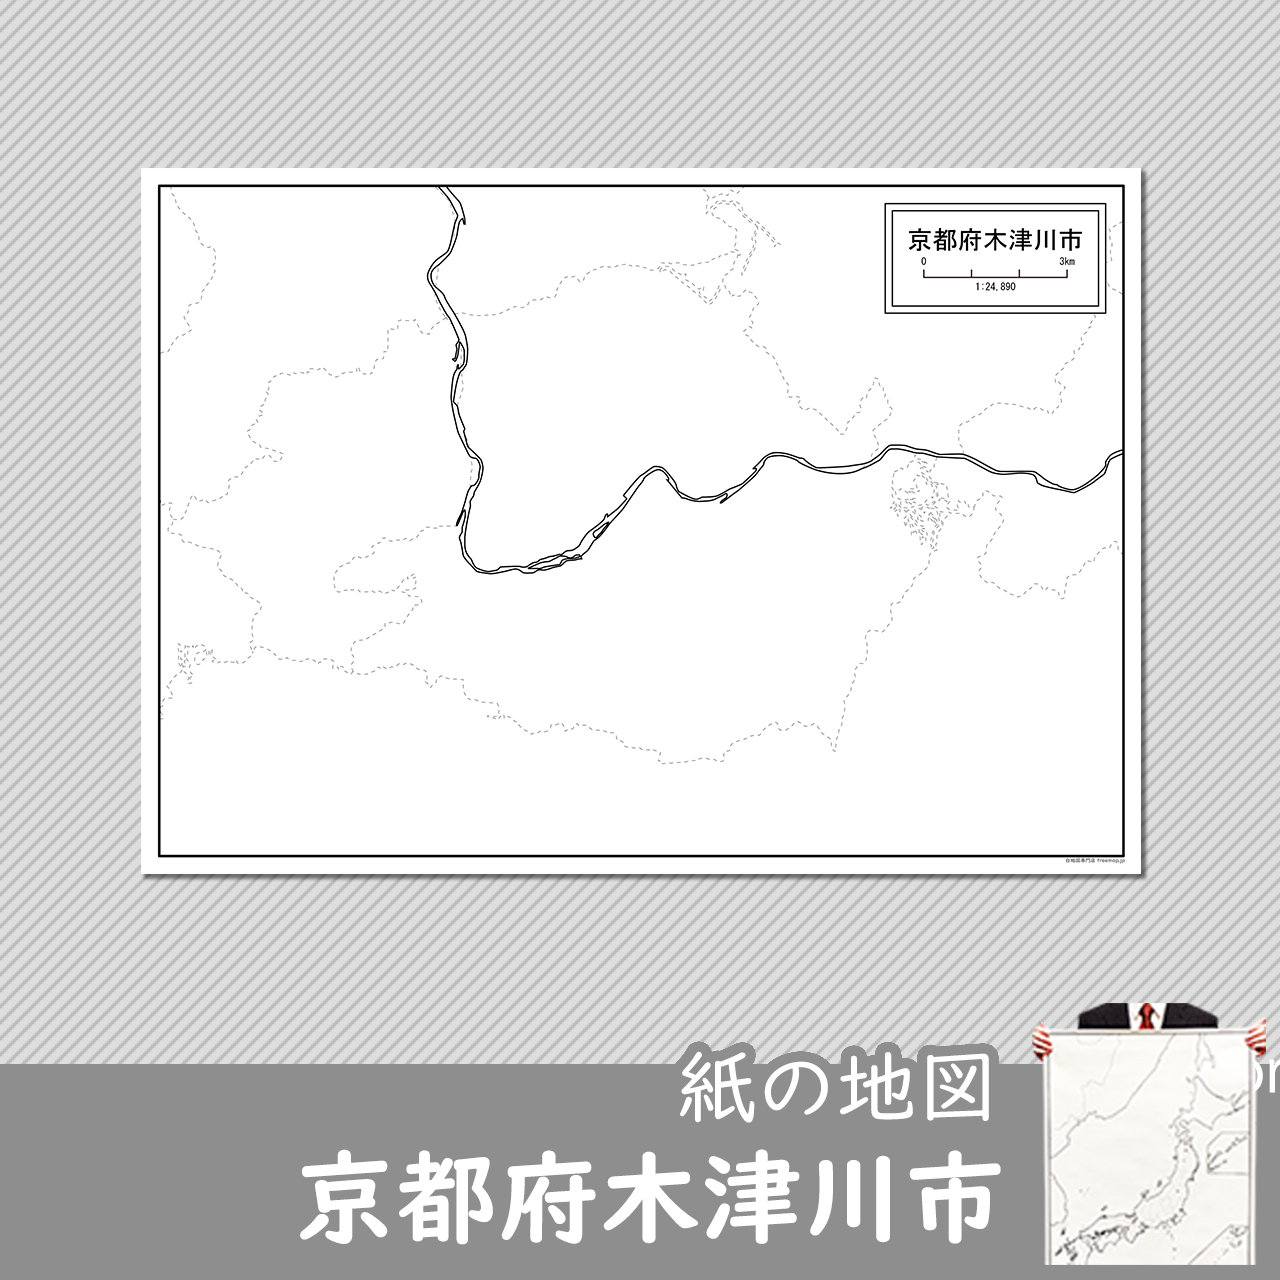 木津川市の紙の白地図のサムネイル